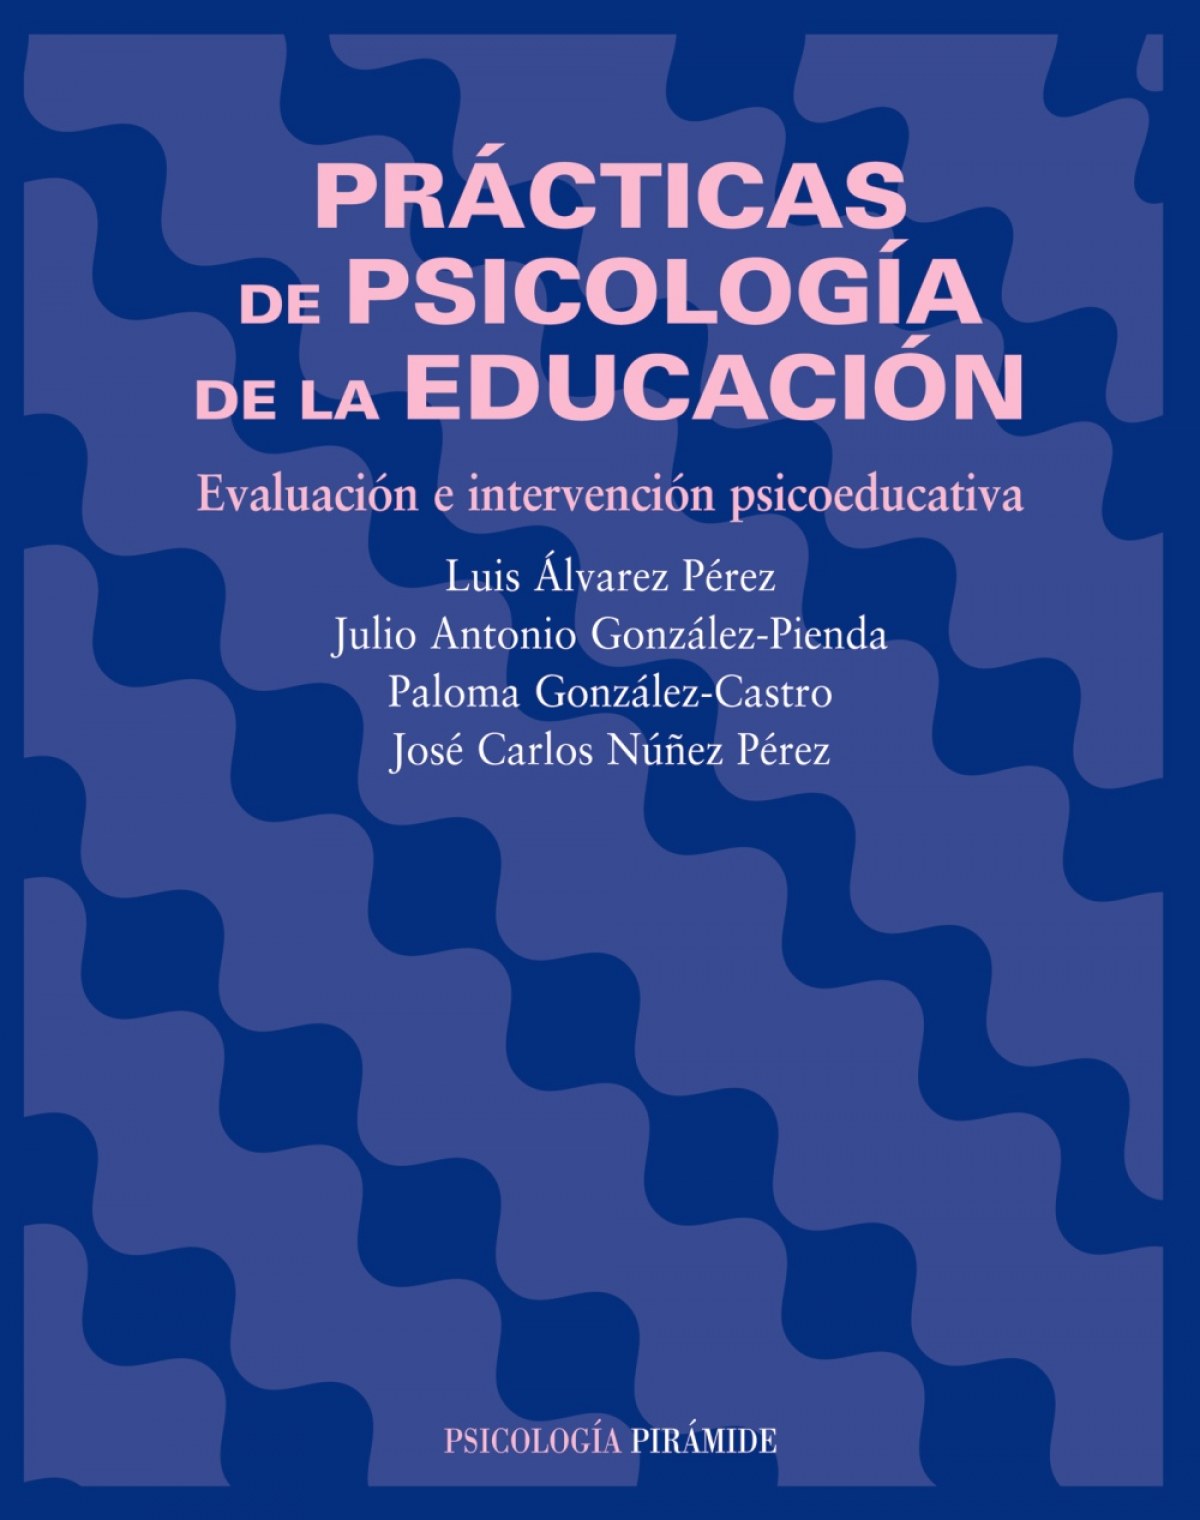 Practicas psicologia educacion:evaluacion intervencion educ - Alvarez Perez Y Otros